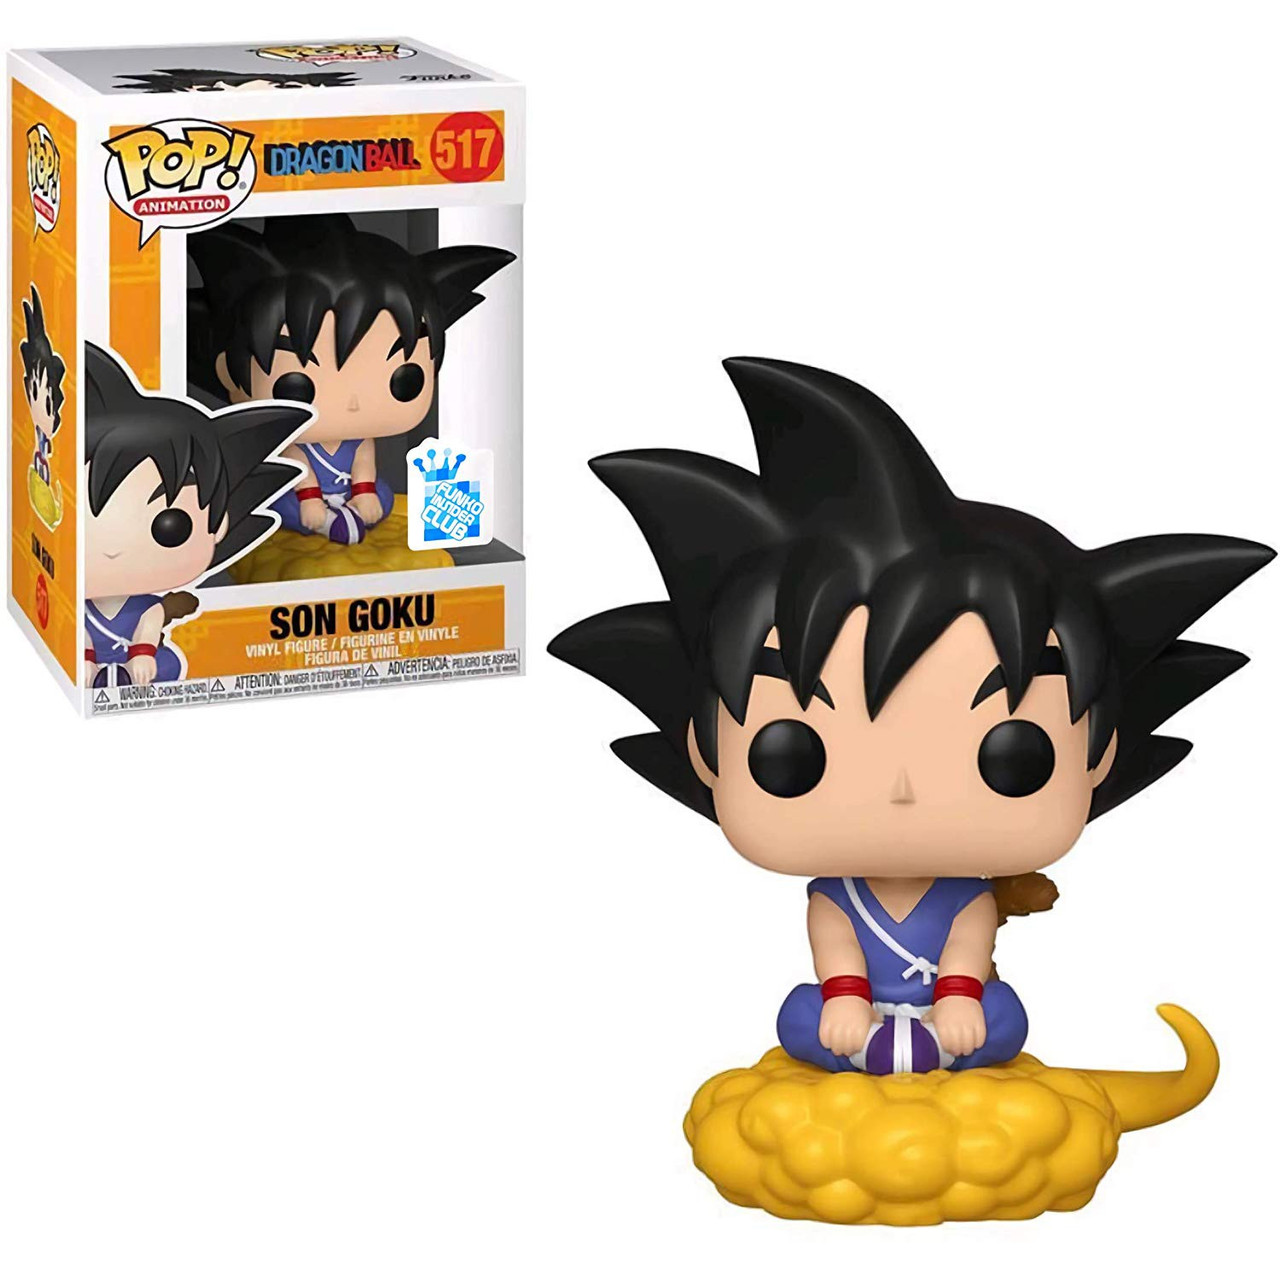 Funko Dragon Ball Z Pop Animation Young Goku Exclusive Vinyl Figure 517 Toywiz - ssj2 goku hair roblox